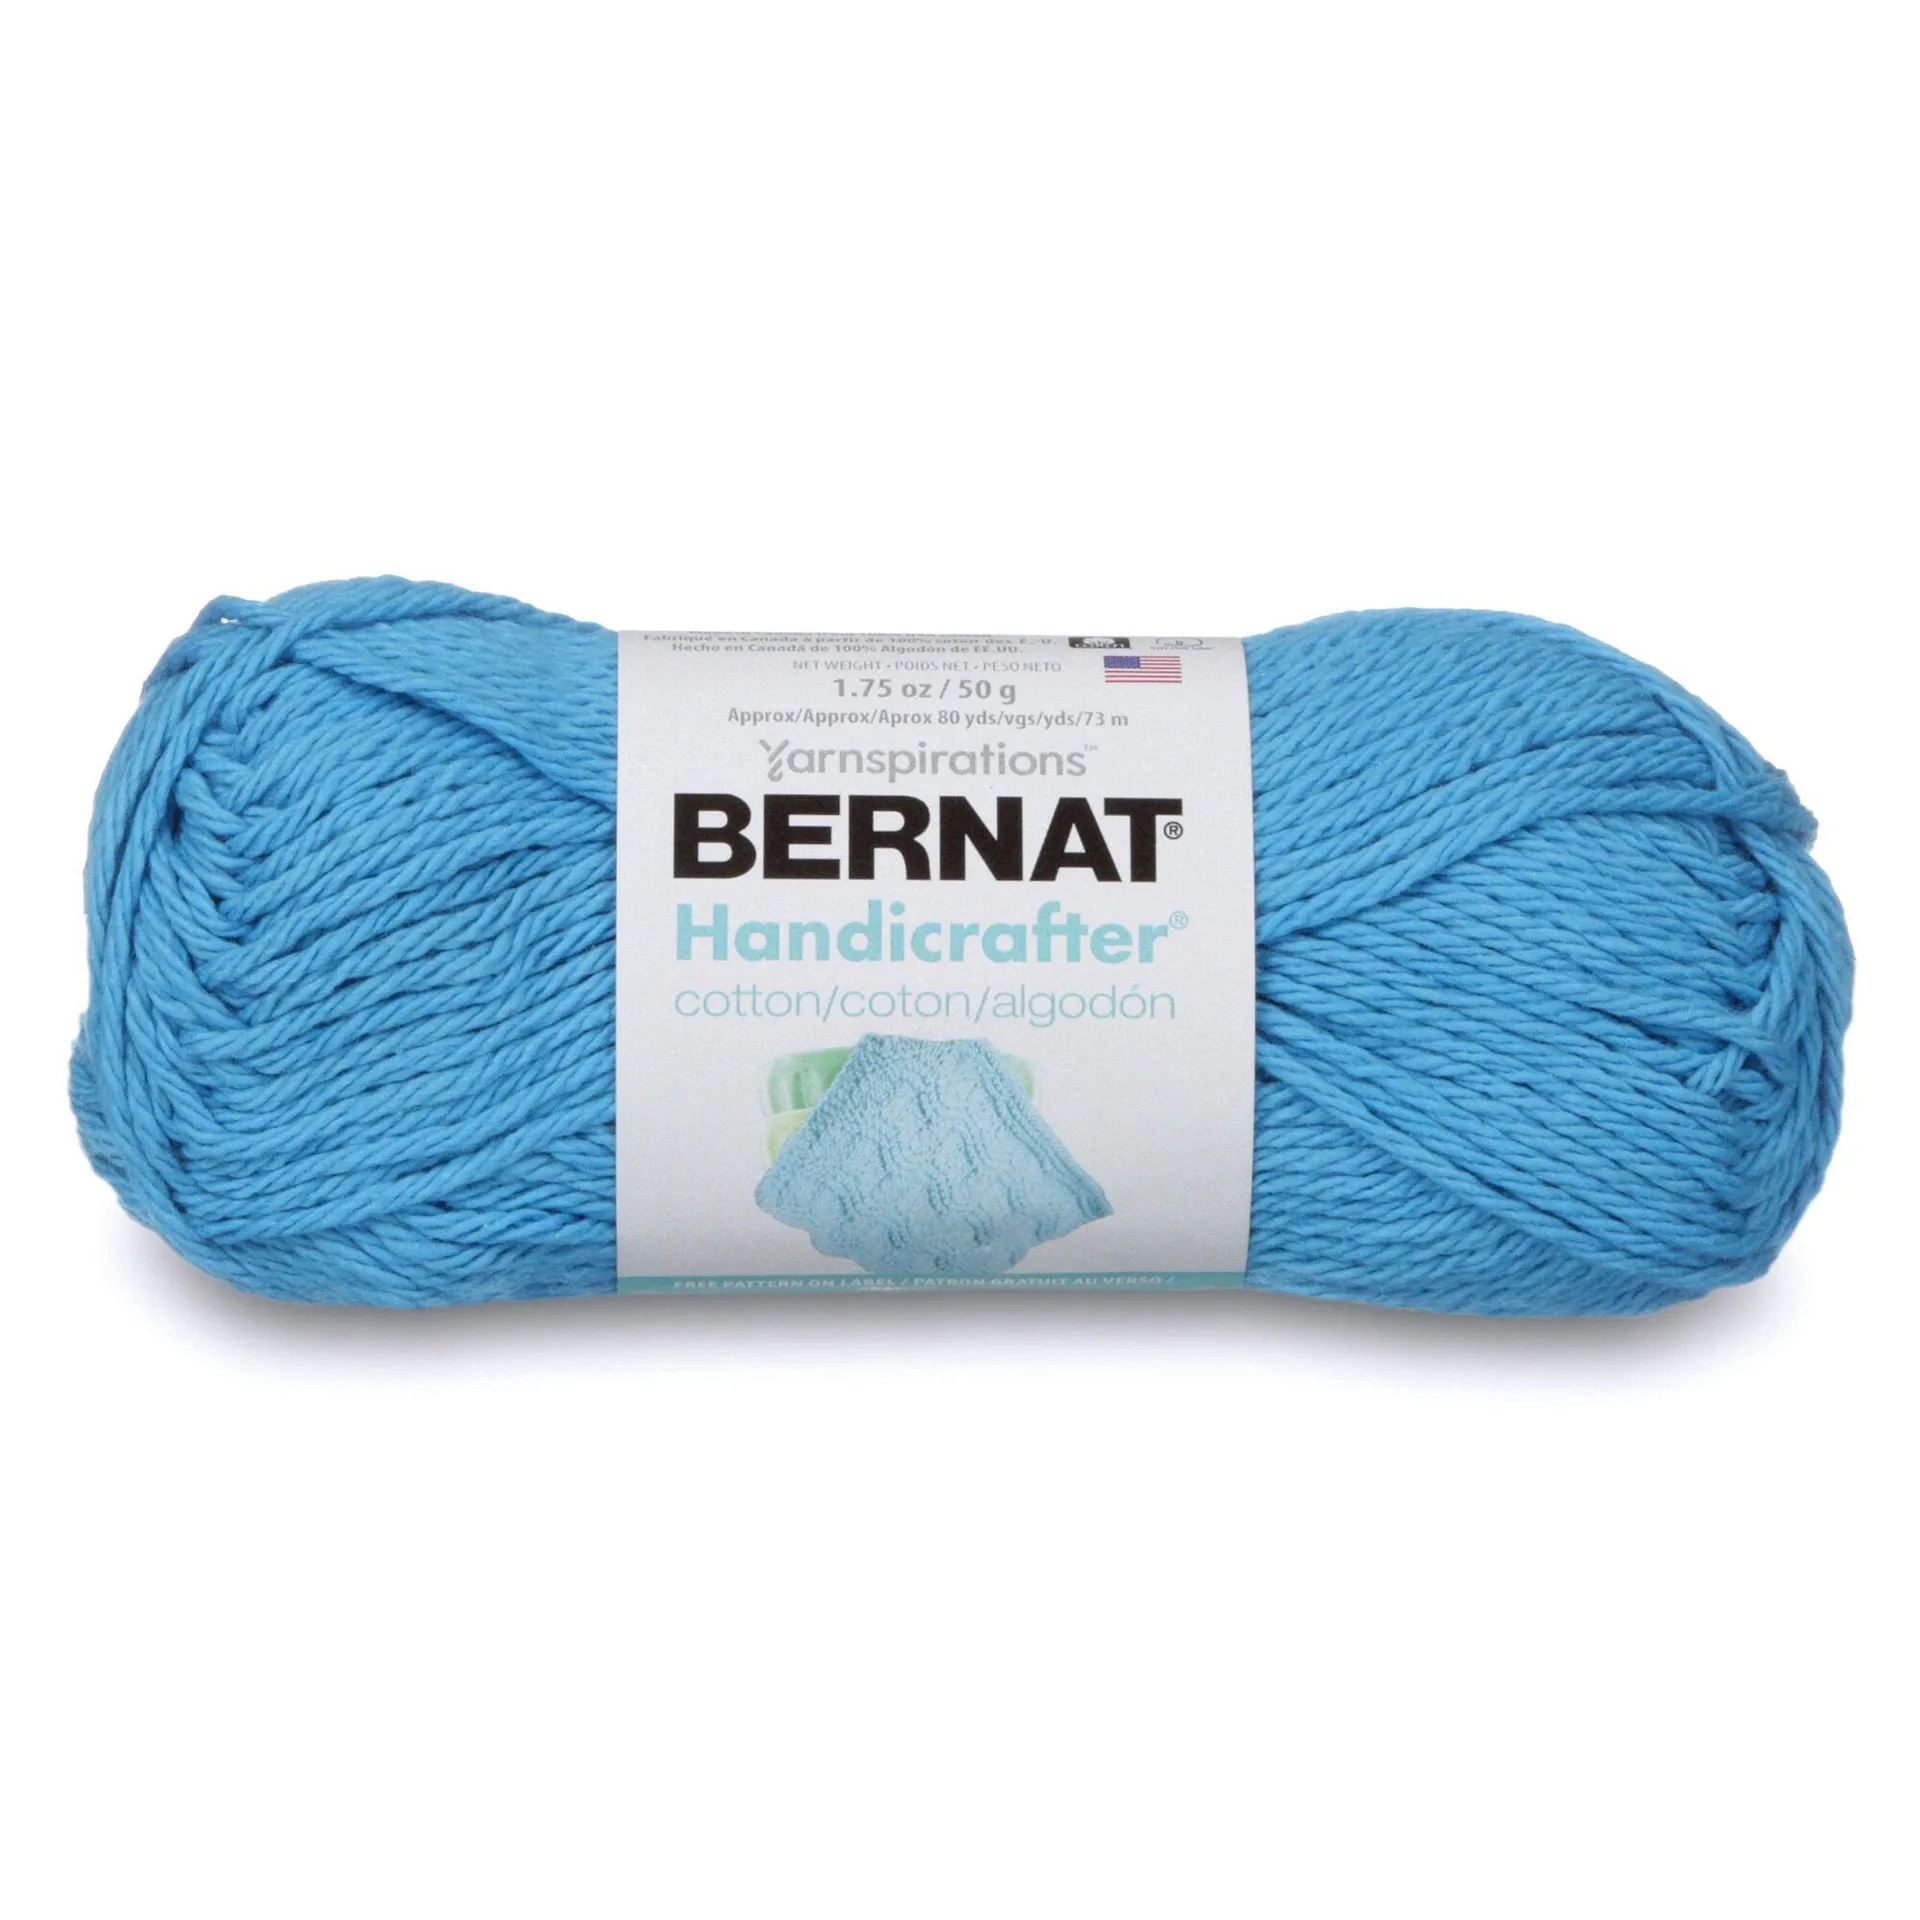 Handicrafter Cotton - 50g - Bernat